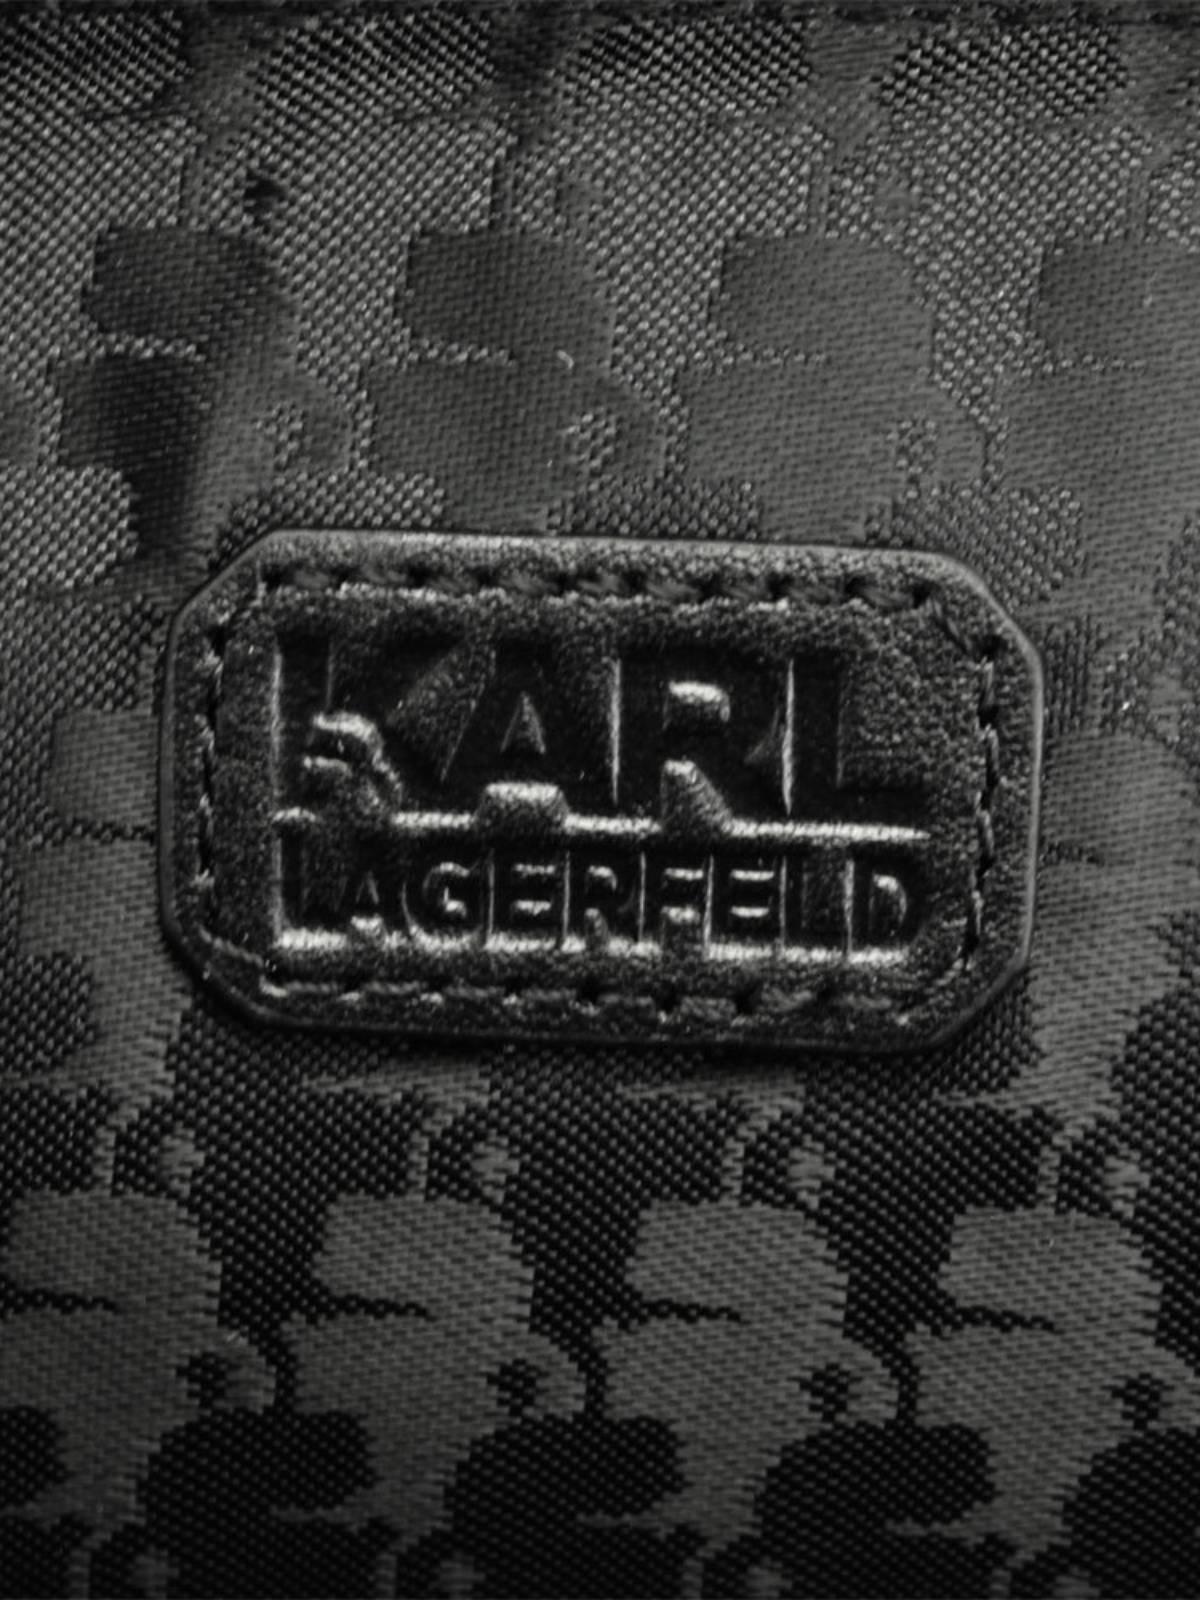 Karl Lagerfeld Rue St Guillaume flat backpack, UhfmrShops